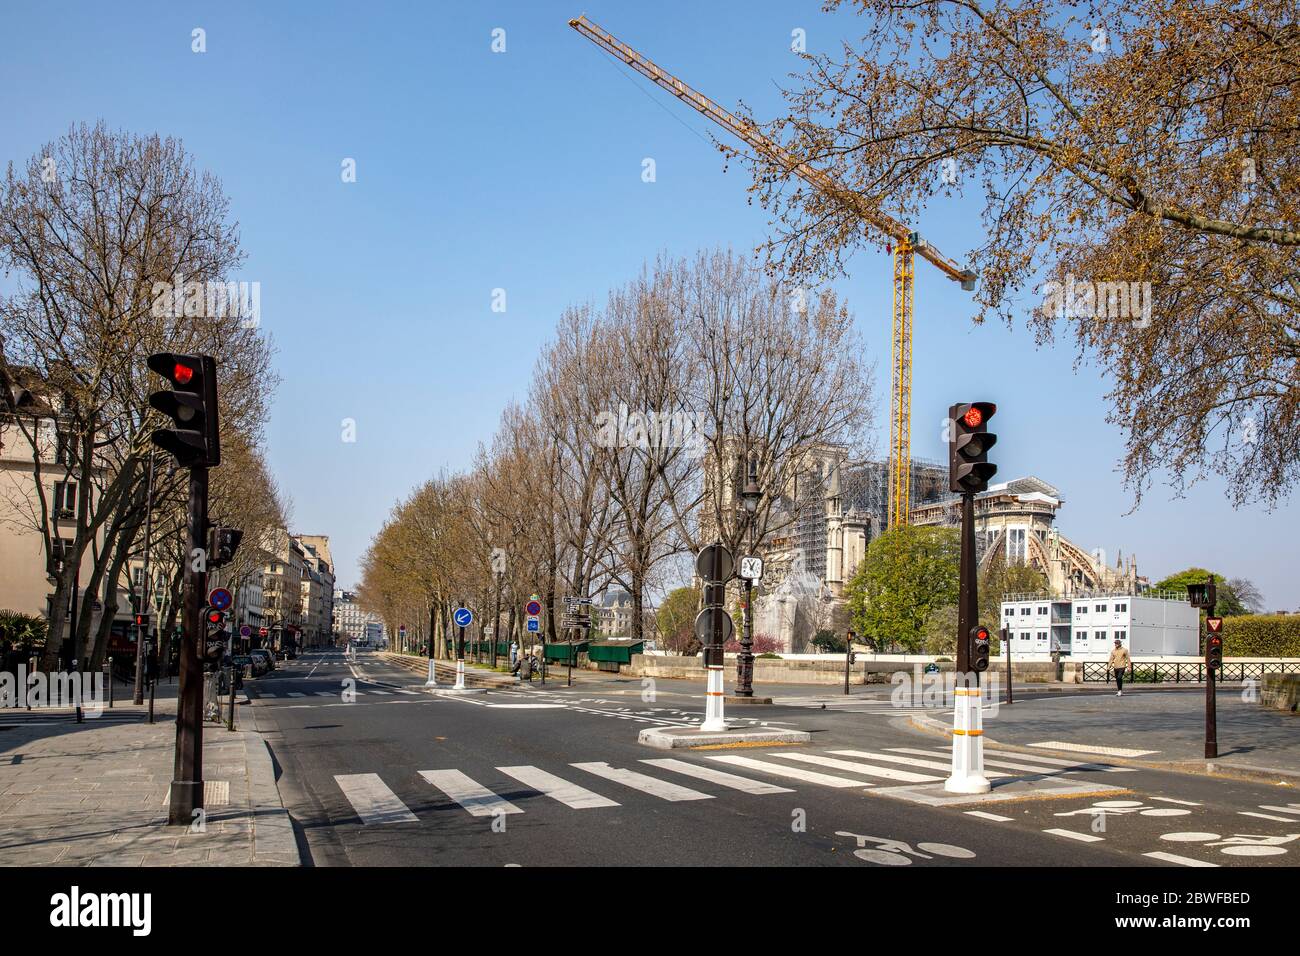 Paris, France - 28 mars 2020 : en raison de l'endiguement dû à la pandémie Covid-19, il n'y a pas de voitures dans la rue de Paris, près de la cathédrale notre-Dame Banque D'Images